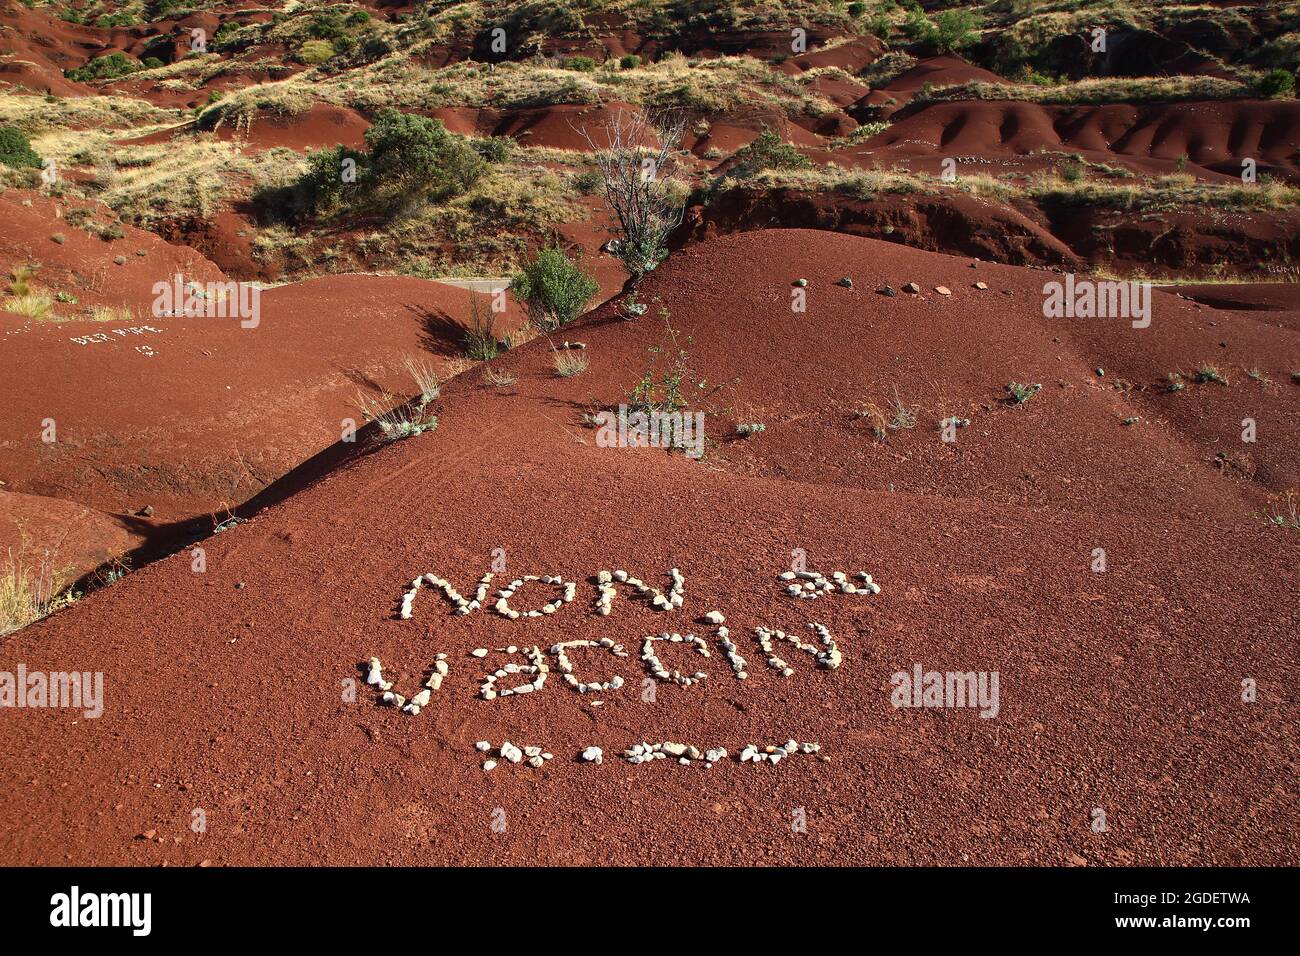 Auf dem roten Boden der Ufer des Salagou-Sees haben Aktivisten Kieselsteine verwendet, um eine feindliche Botschaft bezüglich der Impfung gegen Covid 19 (Frankreich) zu schreiben. Stockfoto